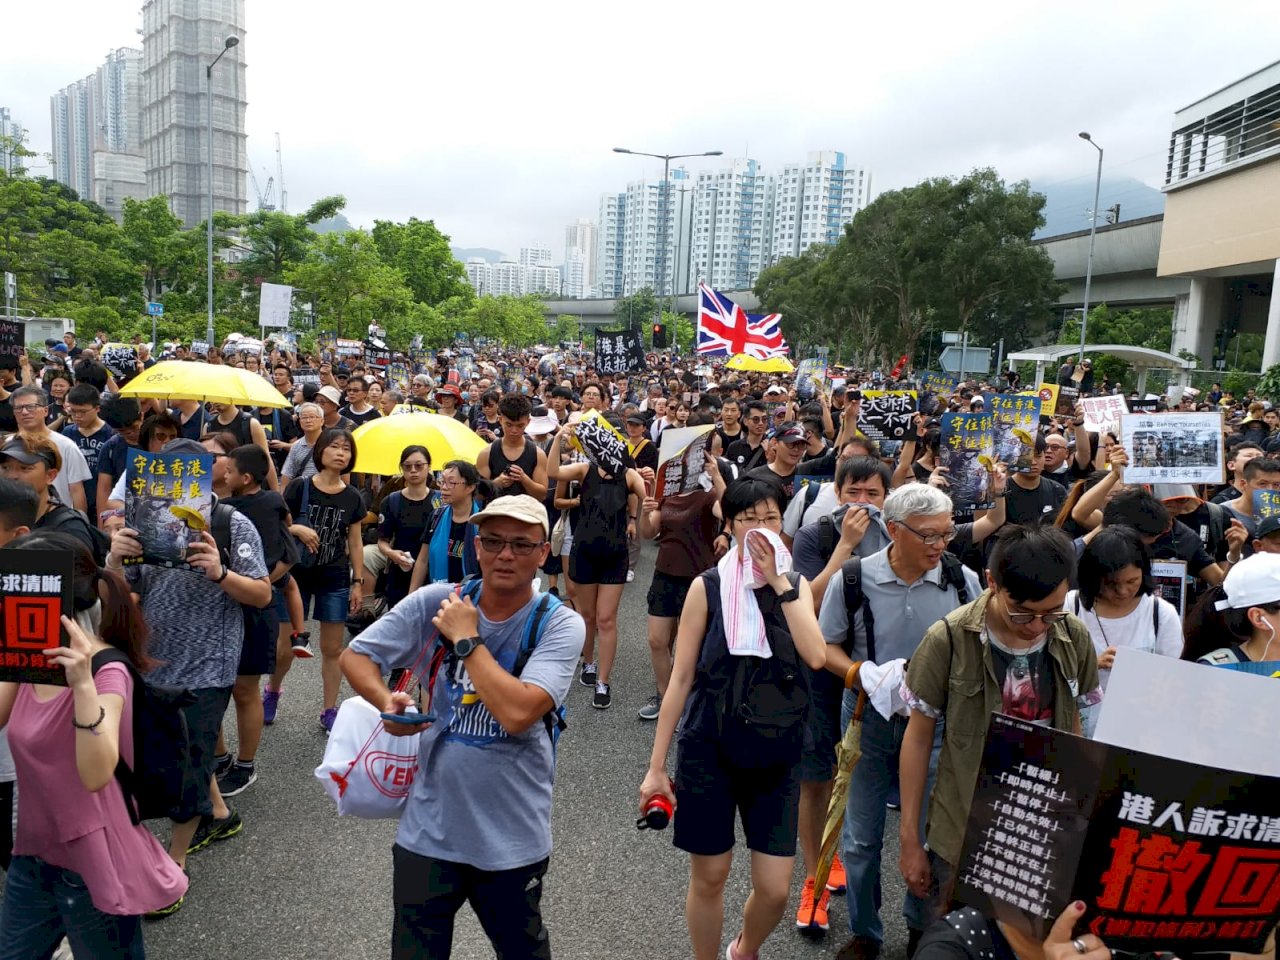 有香港建制派議員要求警方 暫停核准遊行